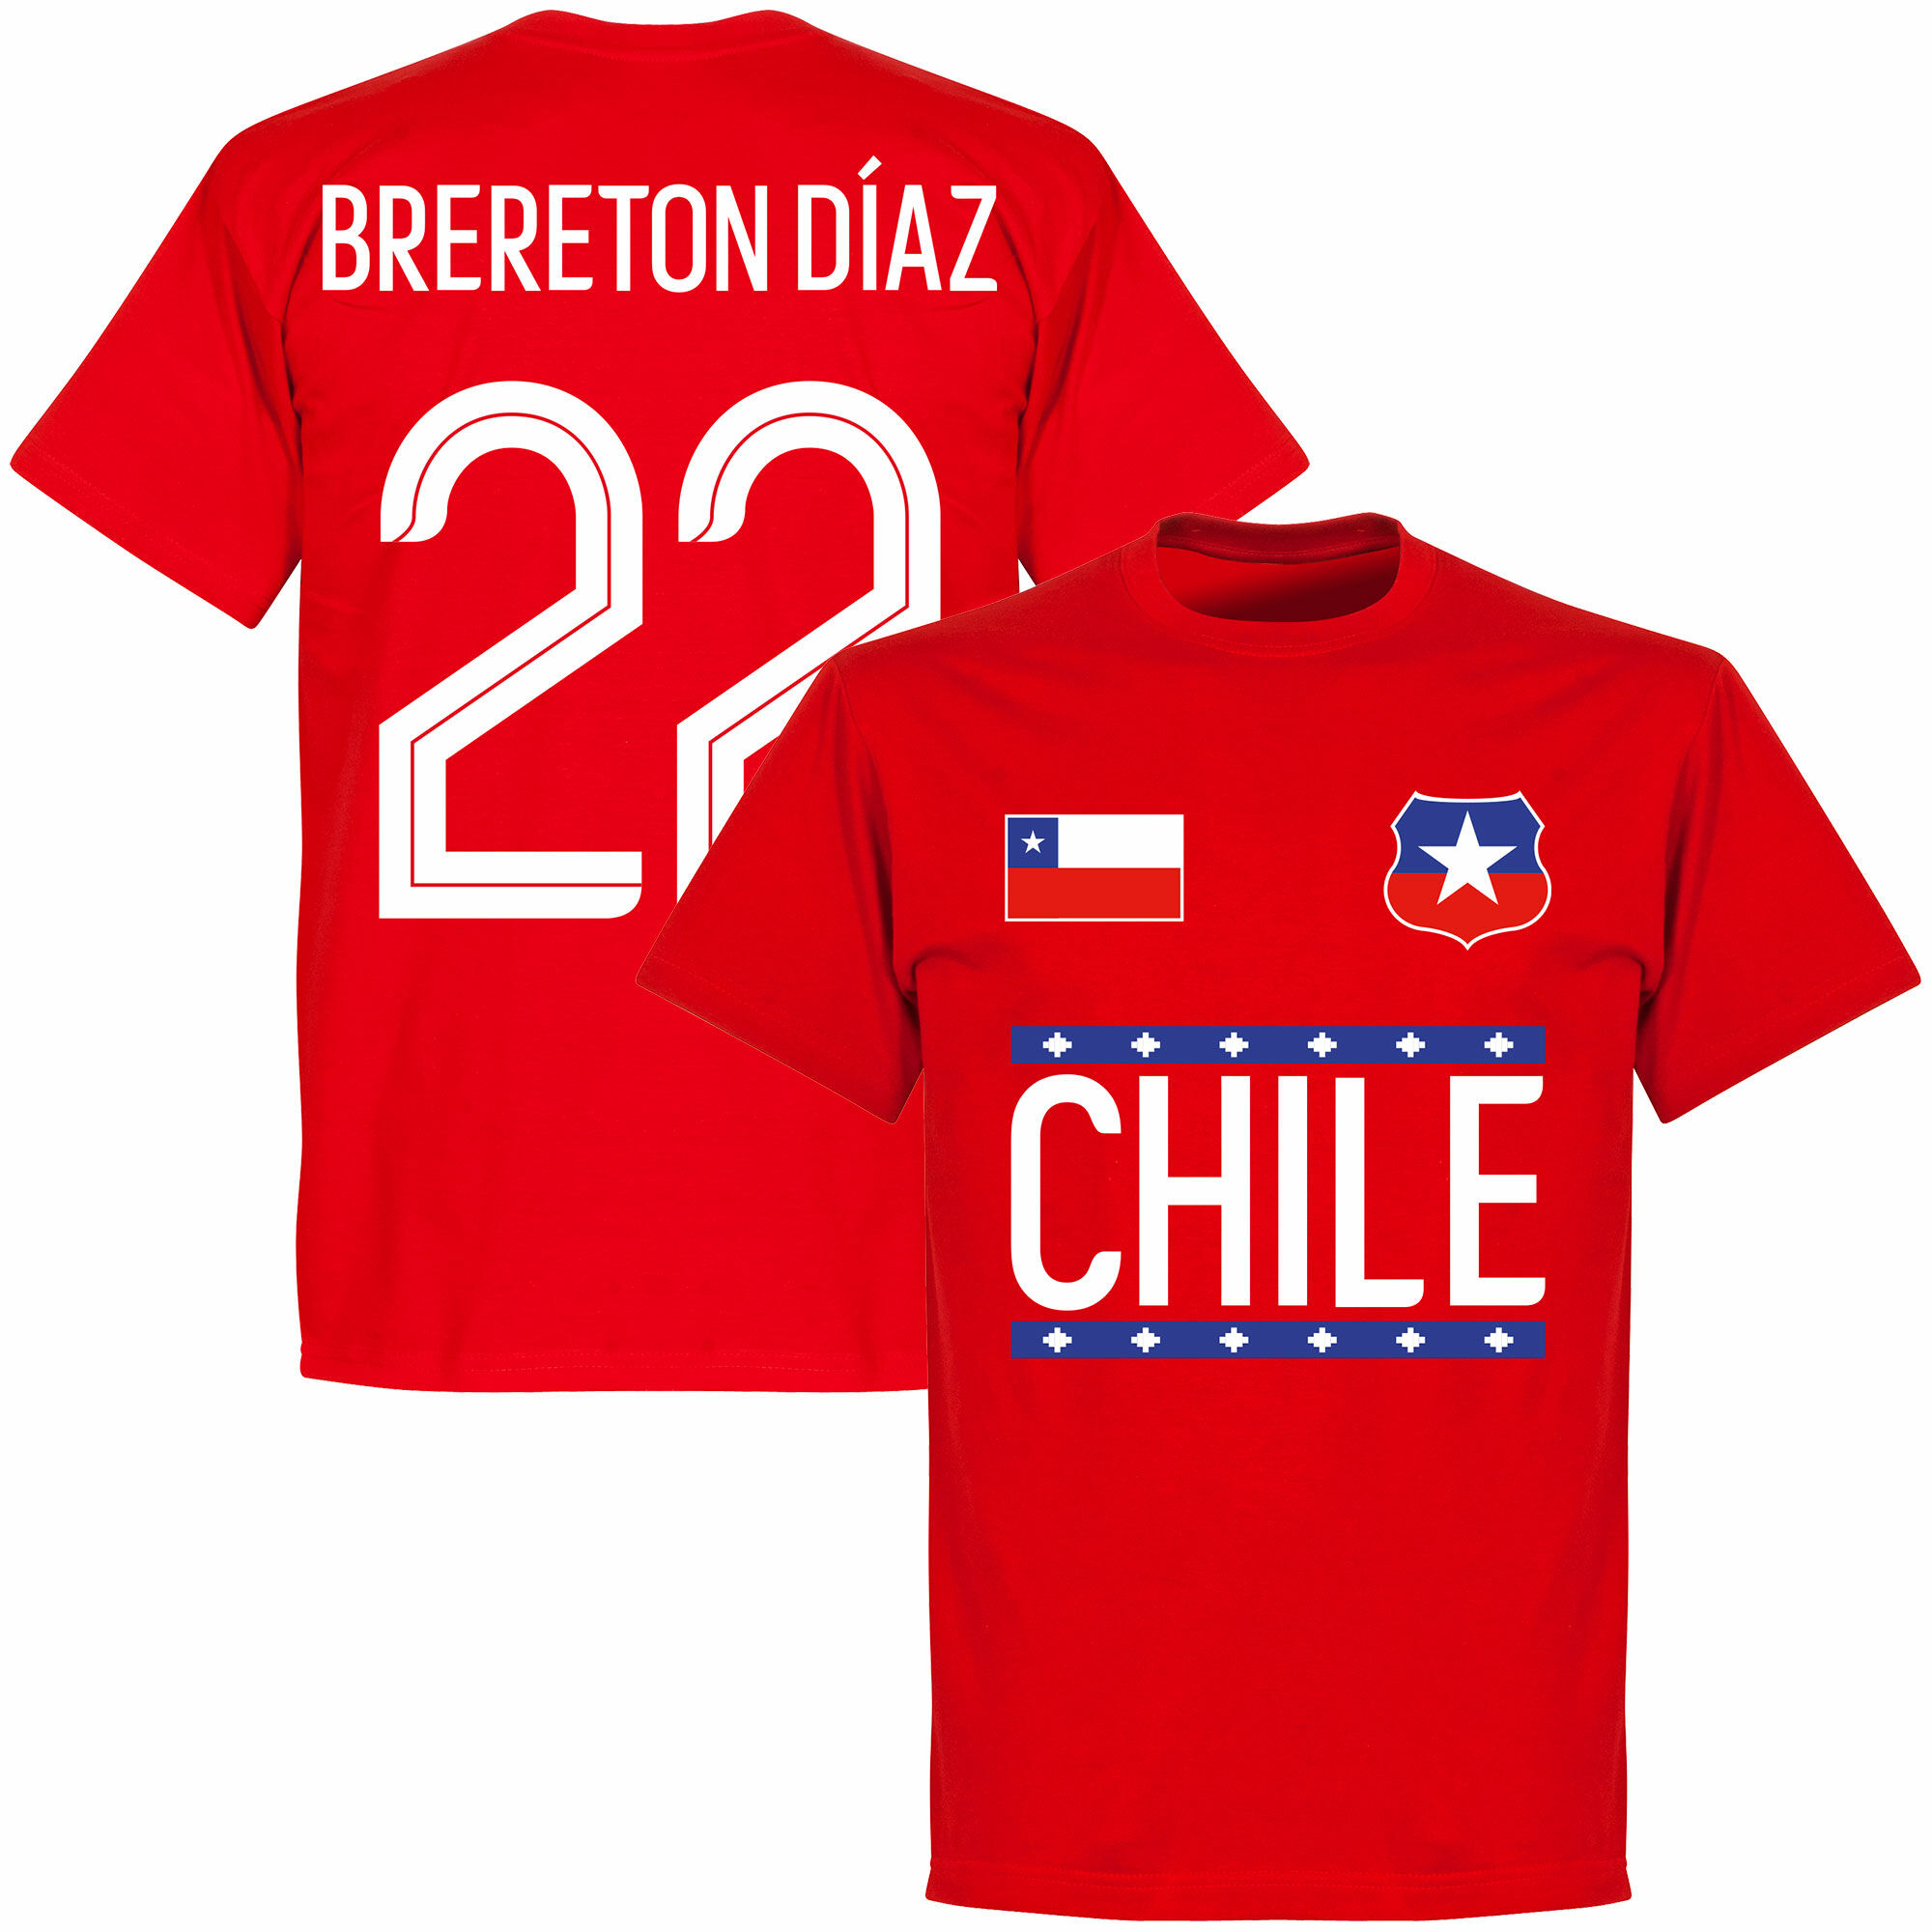 Chile - Tričko - červené, číslo 22, Ben Brereton